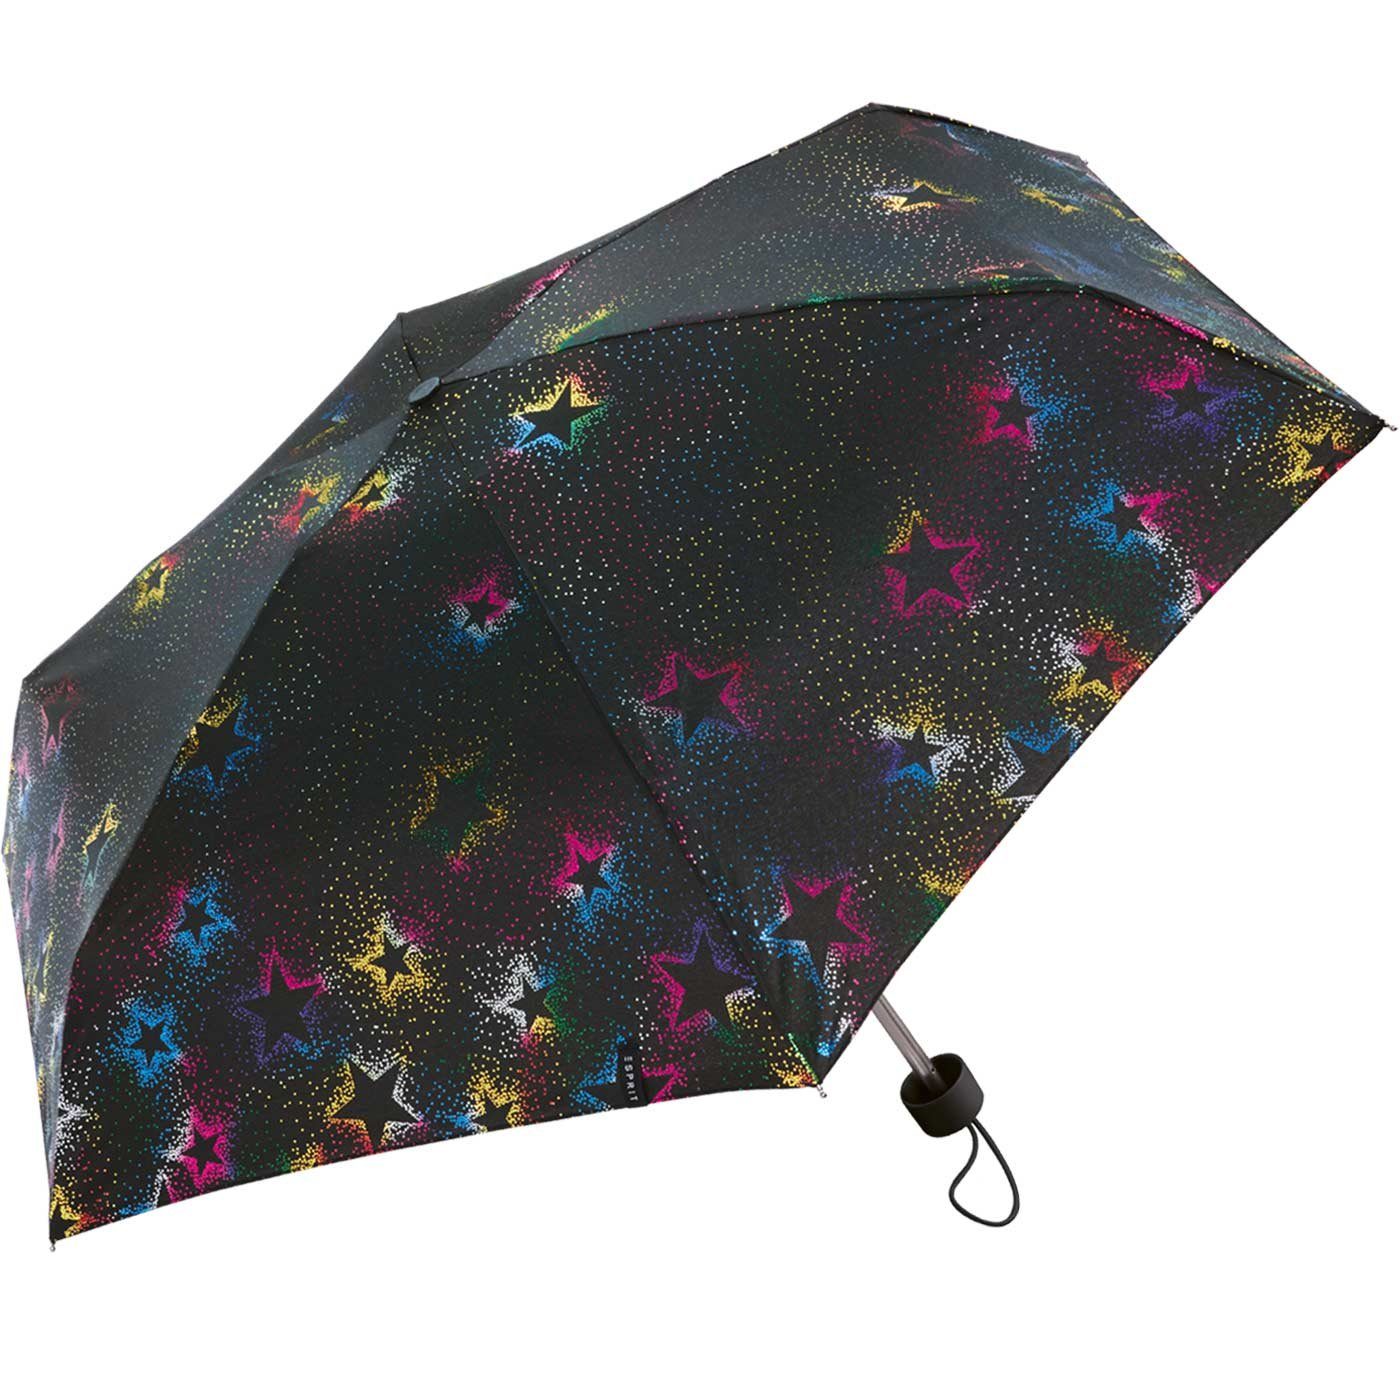 - Taschenregenschirm Starburst Pouch Esprit - Ultra in mit schwarz-bunt klein, Tragetasche winzig einer Tasche Mini multimetallic, praktischen